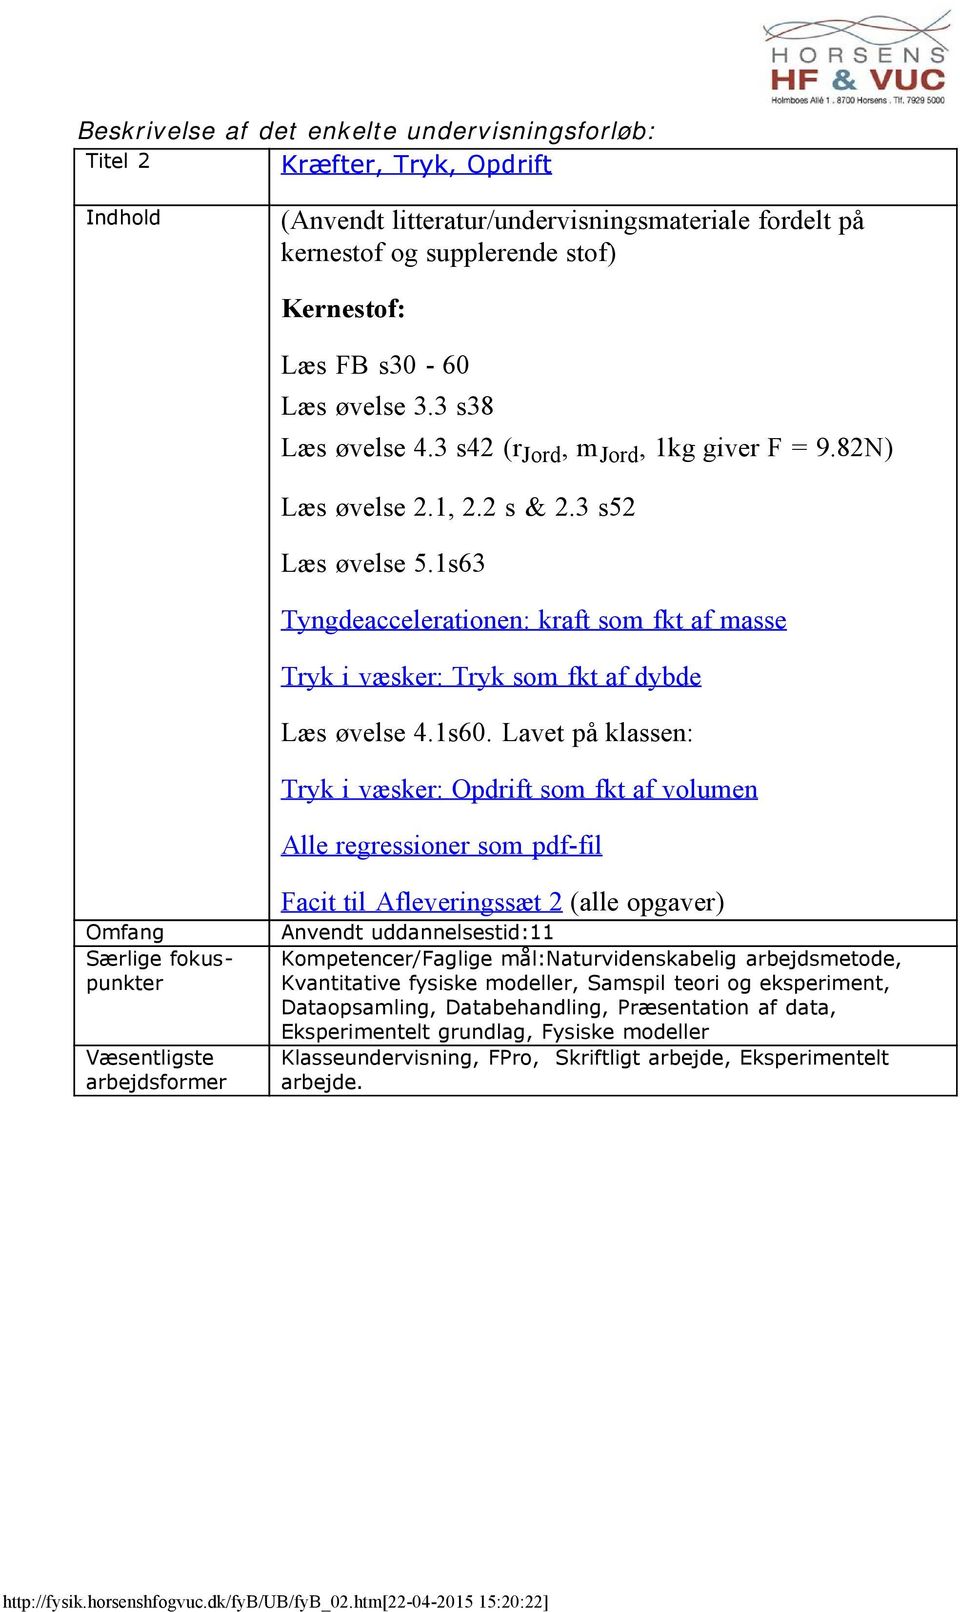 Lavet på klassen: Tryk i væsker: Opdrift som fkt af volumen Alle regressioner som pdf-fil Facit til Afleveringssæt 2 (alle opgaver) Anvendt uddannelsestid:11 Kompetencer/Faglige